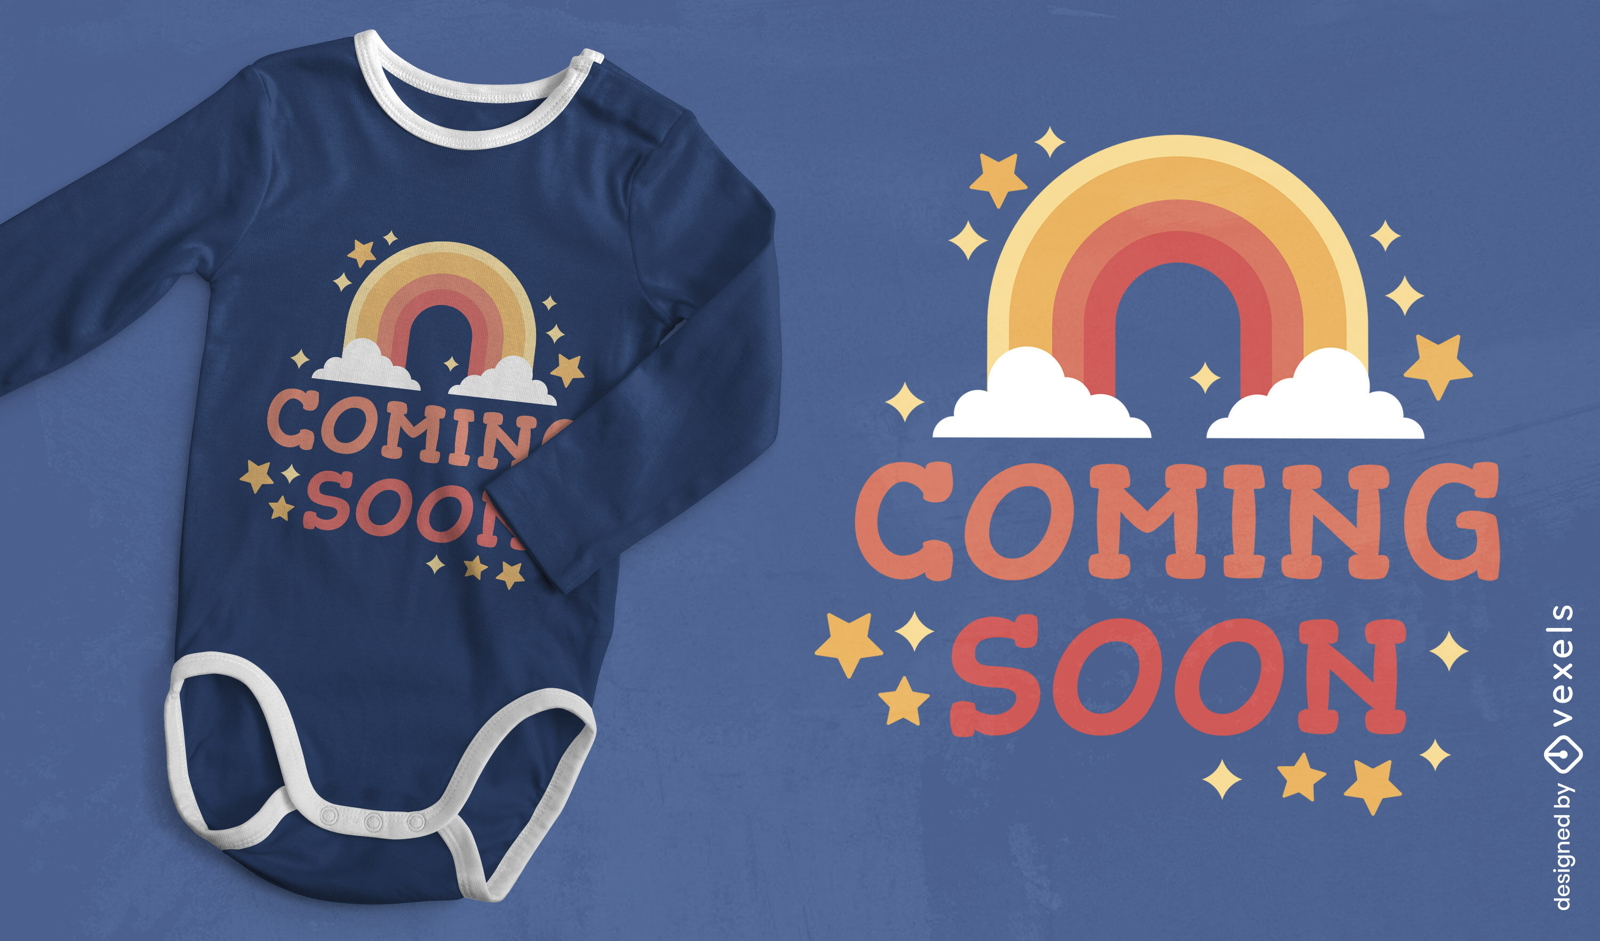 Regenbogen-Baby-Ank?ndigungs-T-Shirt-Design